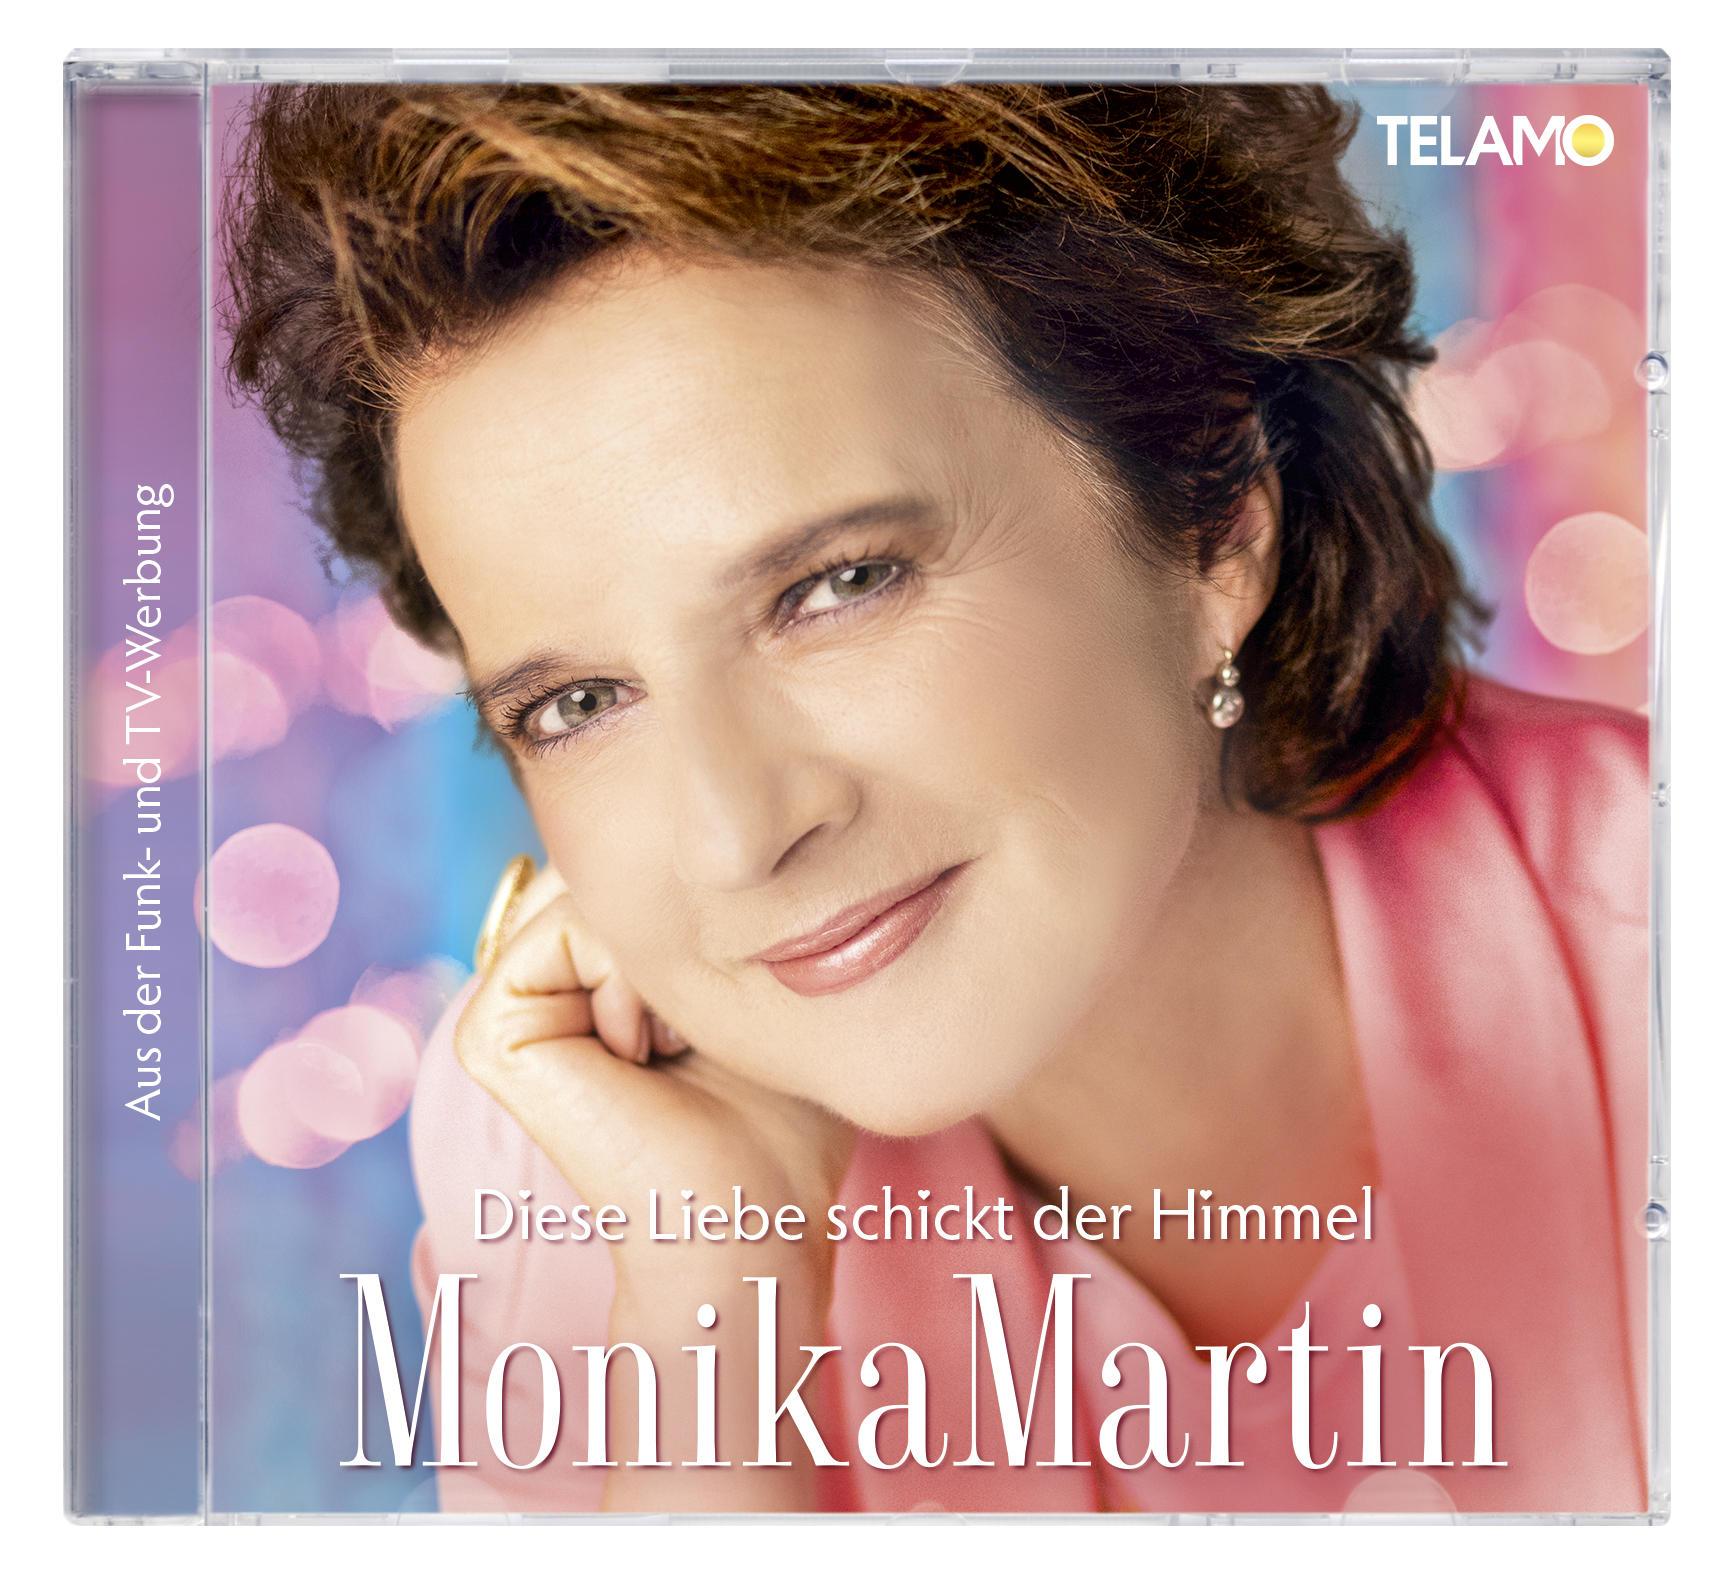 Liebe schickt - Monika Martin der Diese - Himmel (CD)